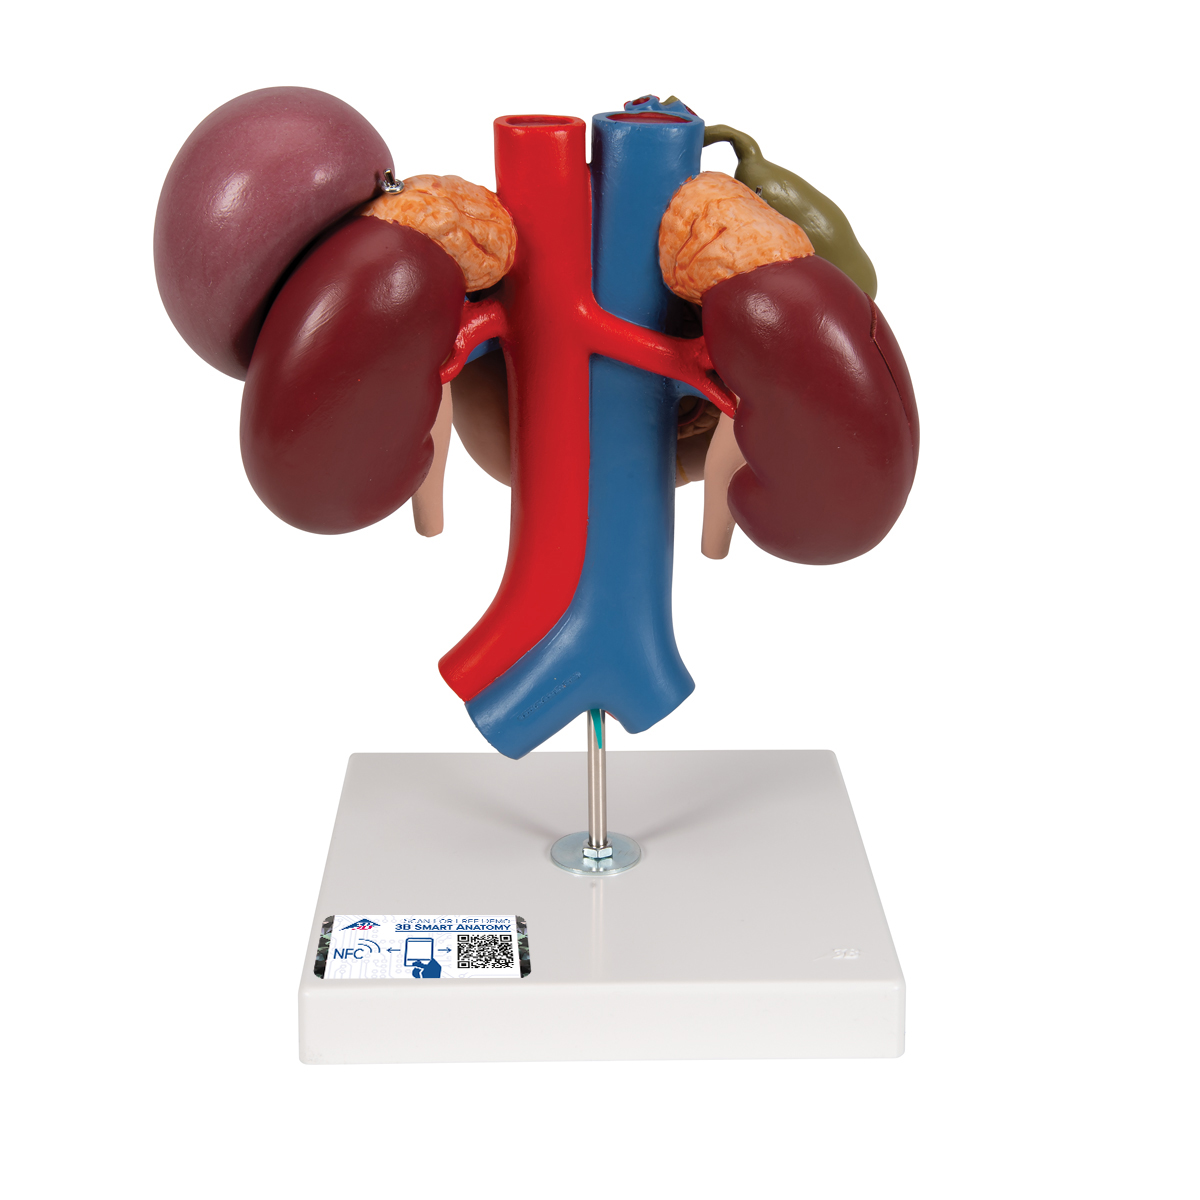 Nierenmodell mit hinteren Oberbauchorganen, 3-teilig - 3B Smart Anatomy, Bestellnummer 1000310, K22/3, 3B Scientific